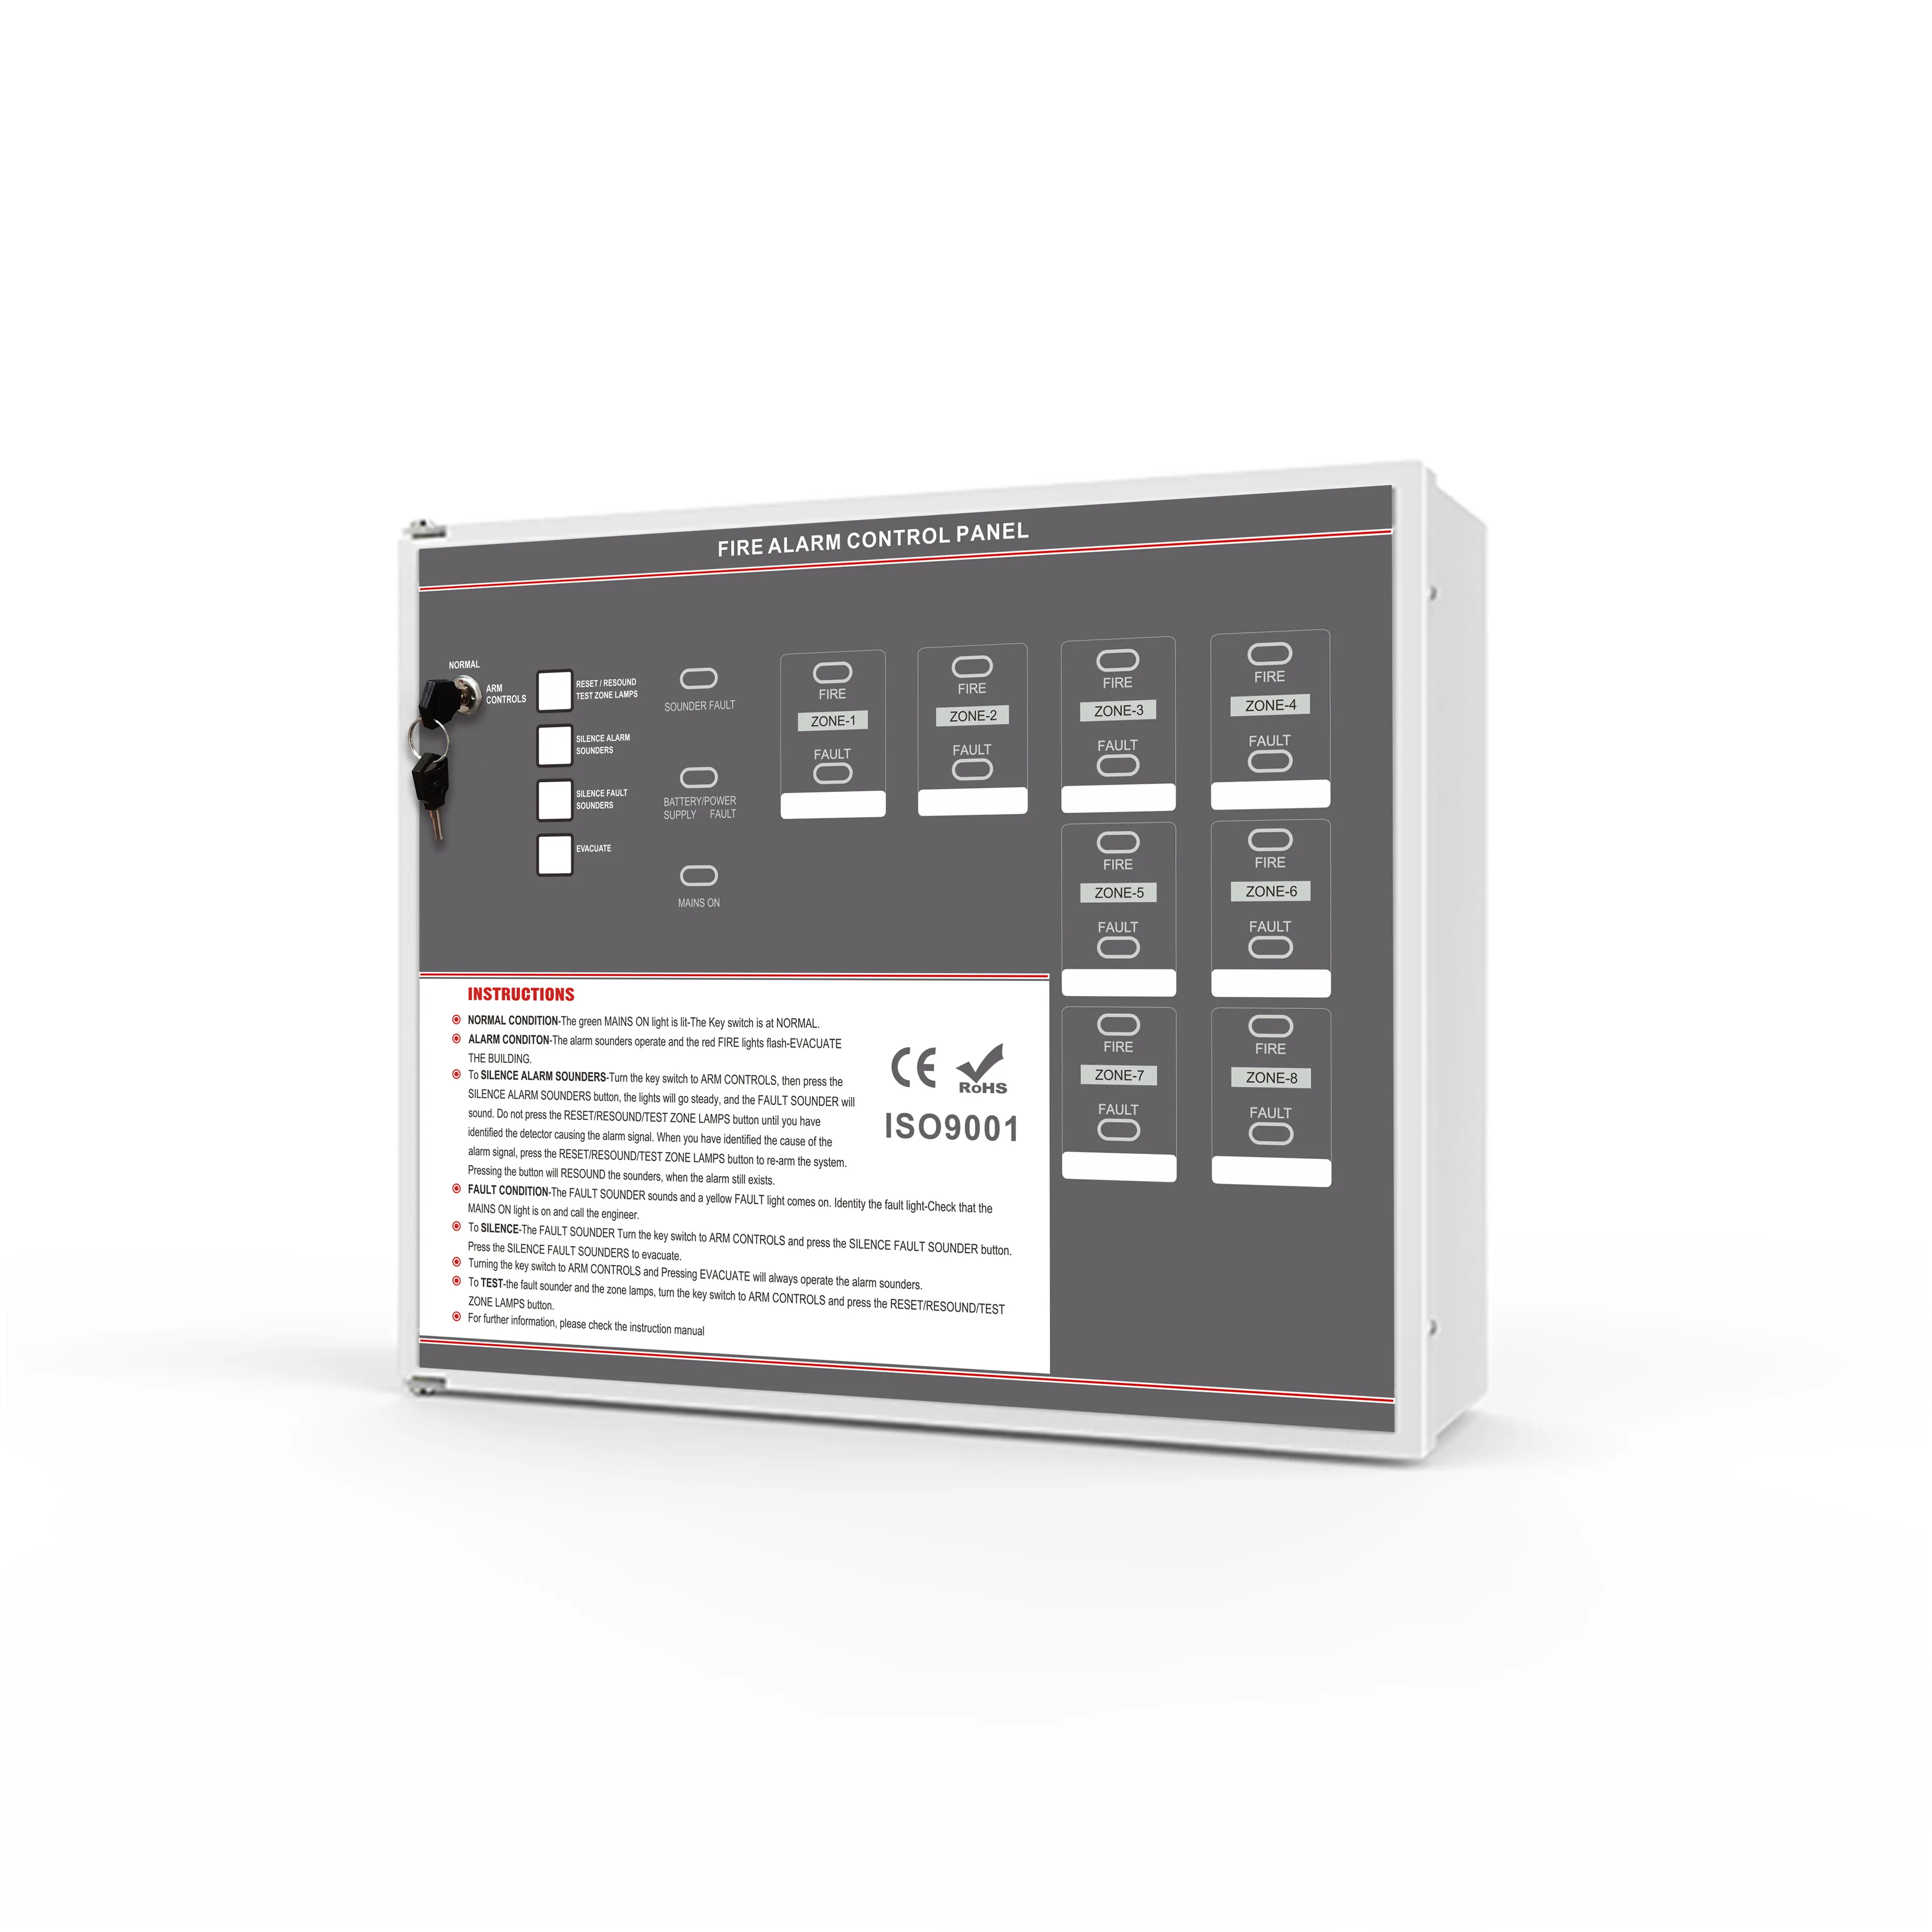 6 зон панель управления стандартной пожарной сигнализации панель управления для системы пожарной сигнализации